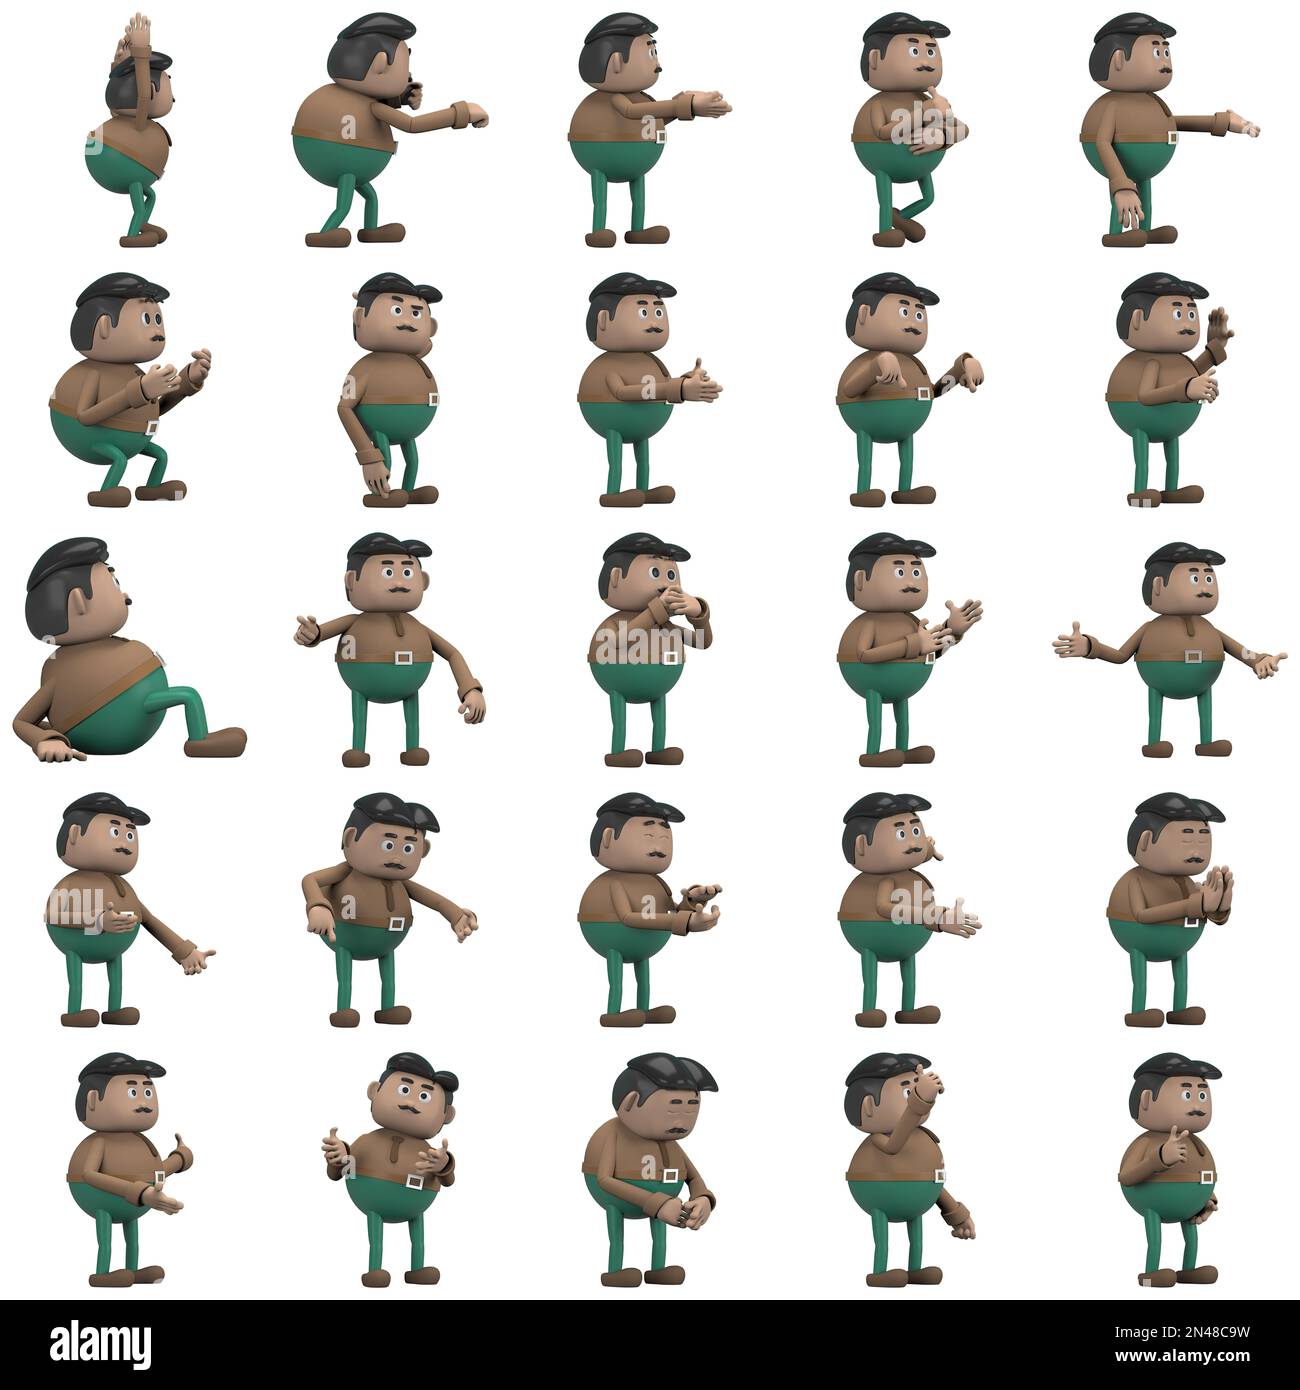 El hombre con bigote que lleva un pantalón verde de camisa larga marrón es  expresión de cuerpo o hacer ejercicio. representación 3d del personaje de  dibujos animados en la actuación Fotografía de